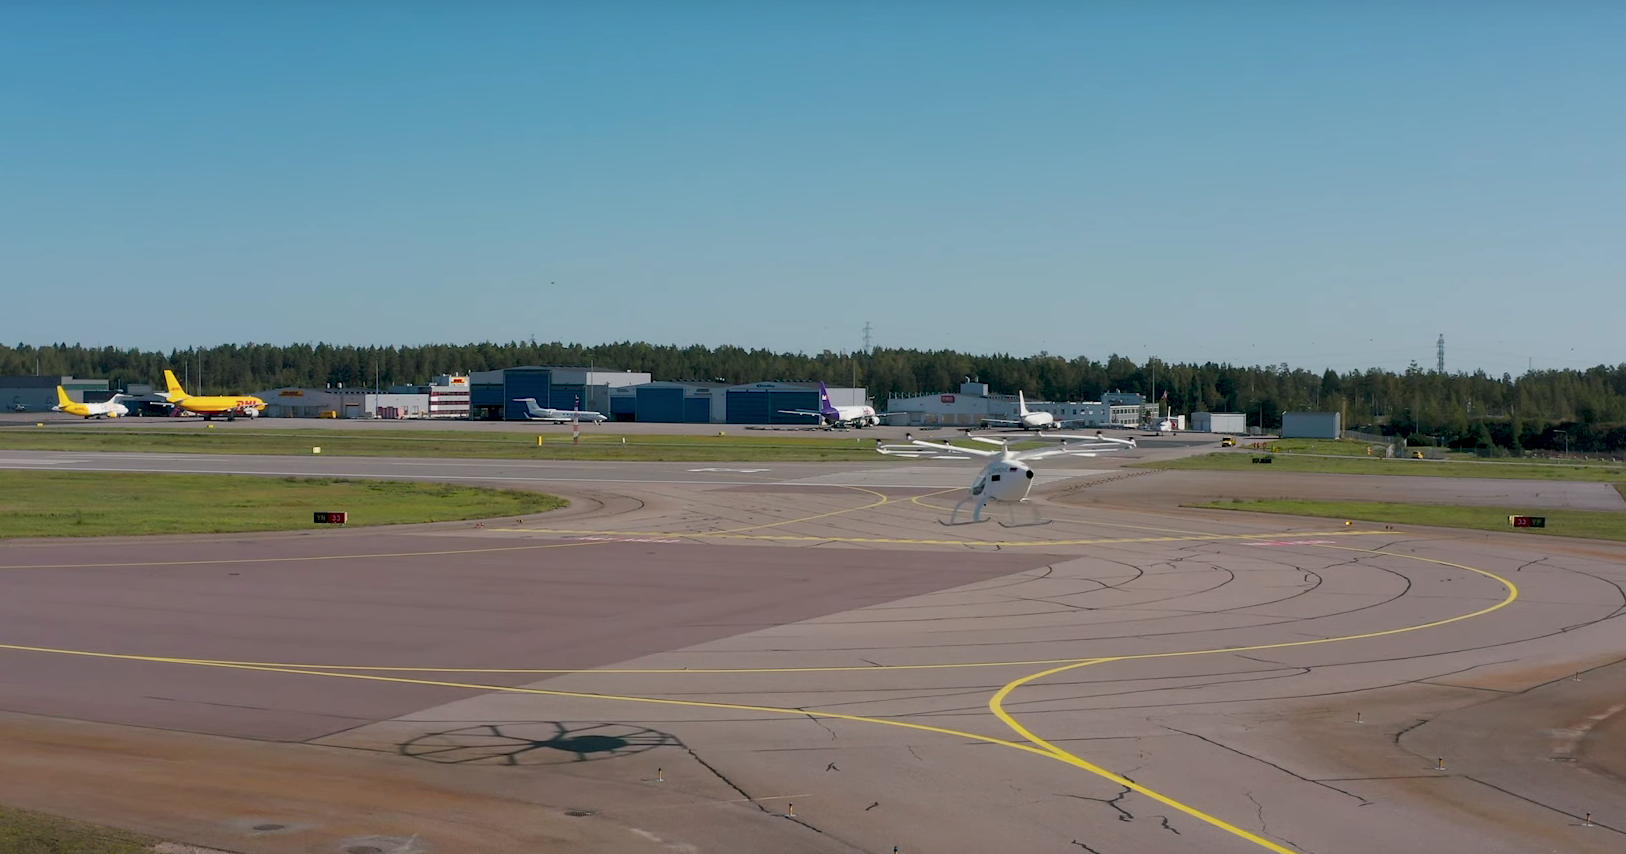 Аэротакси Volocopter совершило полет в Финляндии: видео